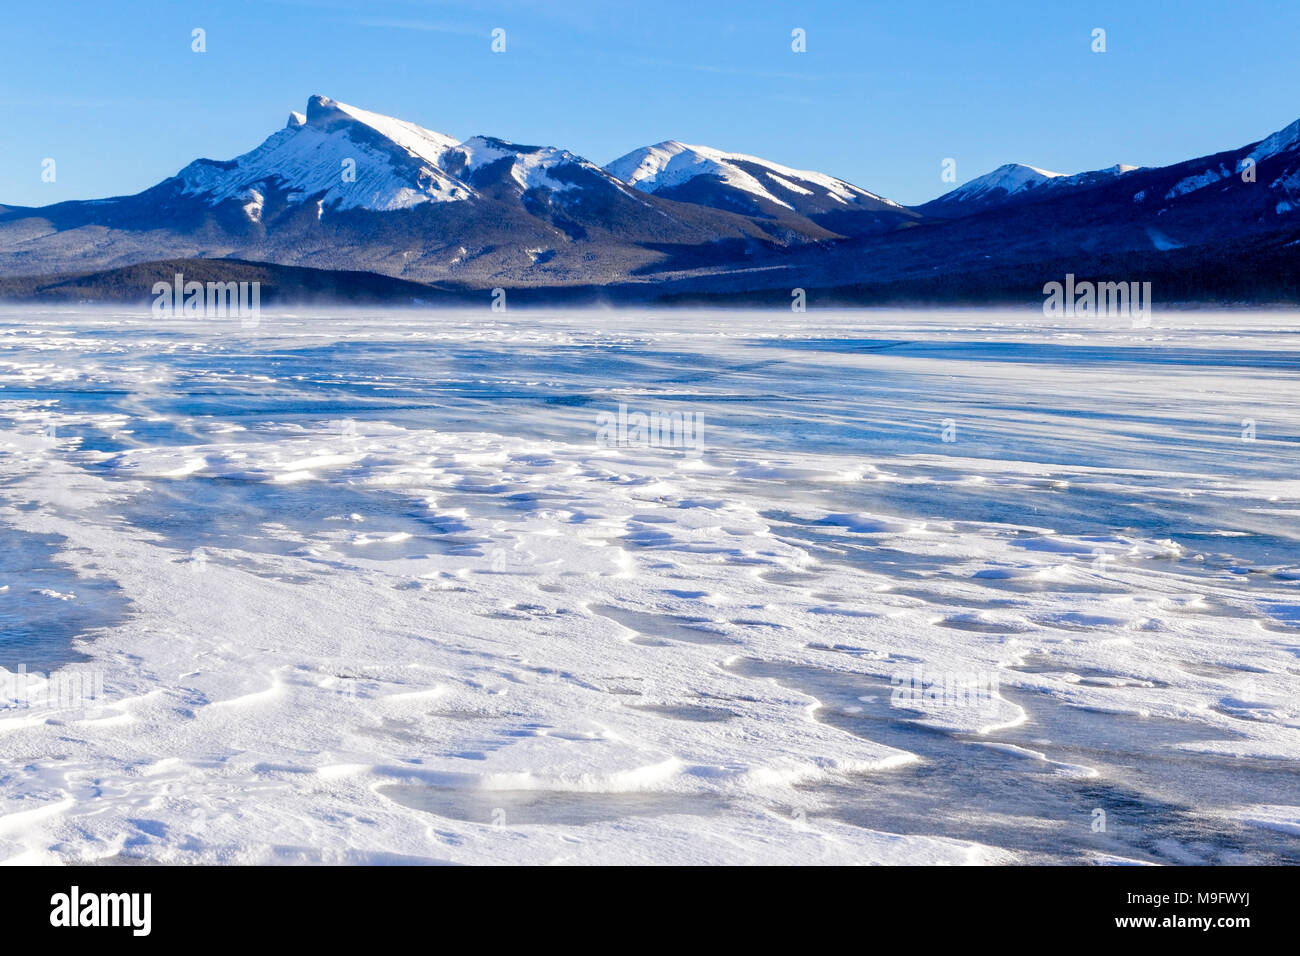 42 747,08360 froid hiver neige paysage de neige a balayé le lac Abraham, congelé, les montagnes du lac Blue Ice background, Nordegg, Alberta Canada, Amérique du Nord Banque D'Images